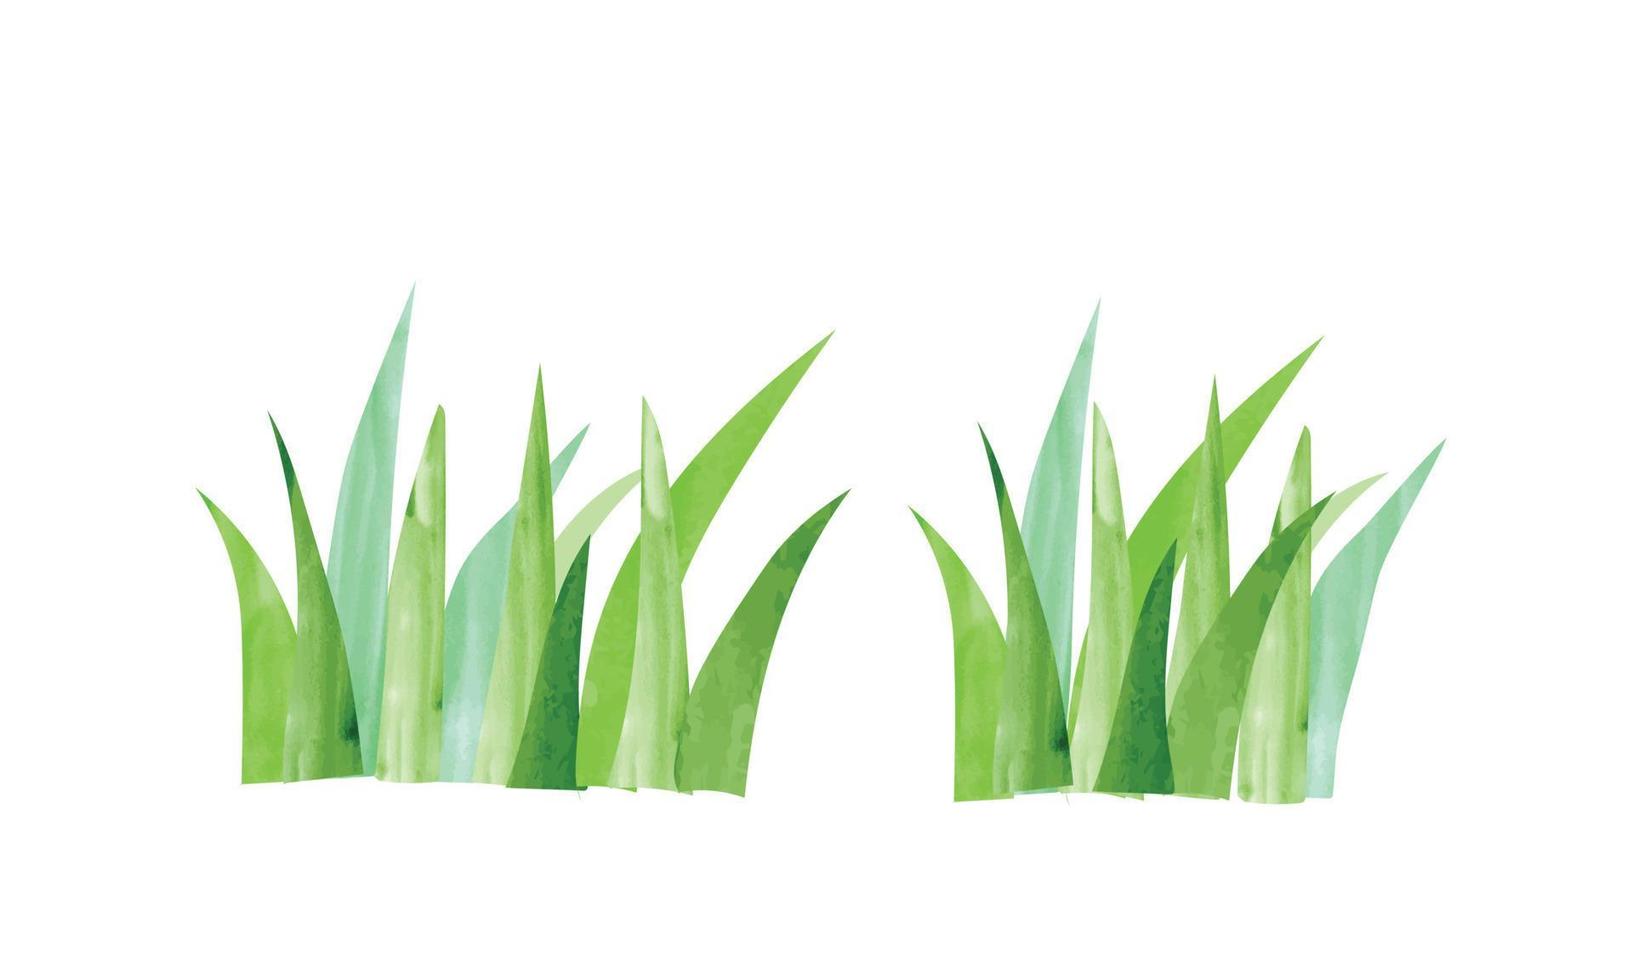 einfache Aquarellmalereiillustration des grünen Grases lokalisiert auf weißem Hintergrund. Blumenhintergrund handgezeichnete Cliparts. Cartoon-Gartengraszeichnung vektor